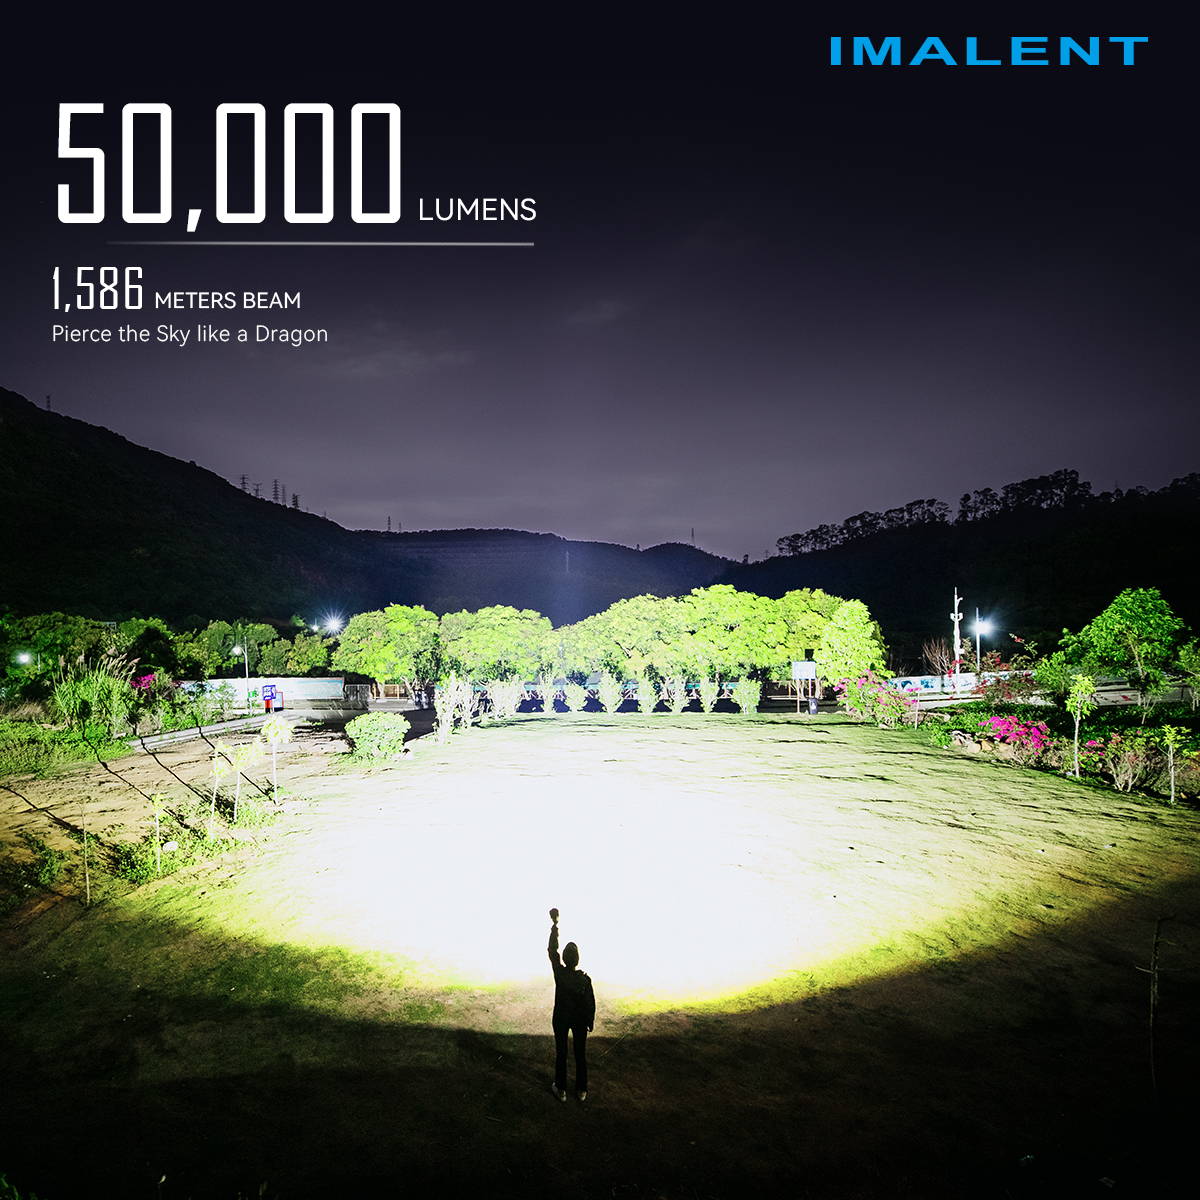 IMALENTMR90スポットライトと投光器を組み合わせたLED懐中電灯